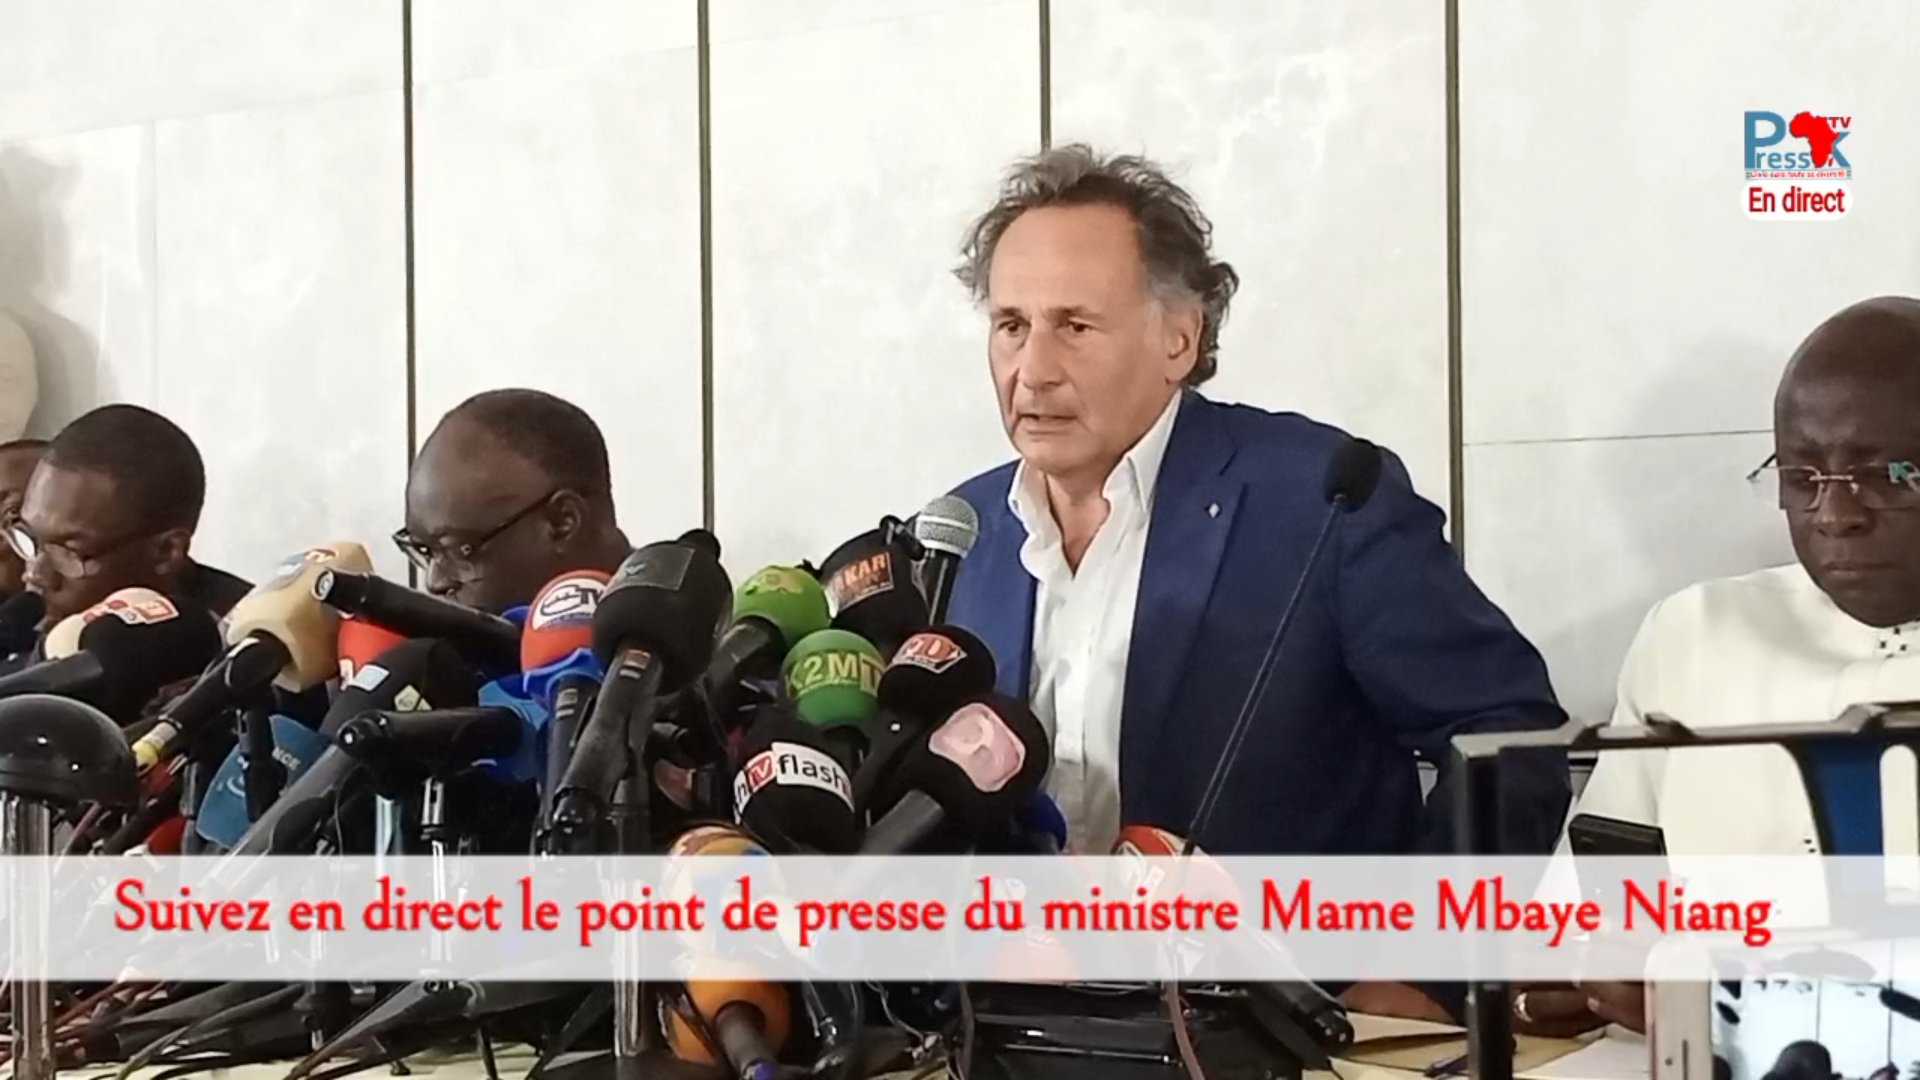 Me Pierre-Olivier Sur réagit à l’expulsion de Me Juan Branco du Sénégal 